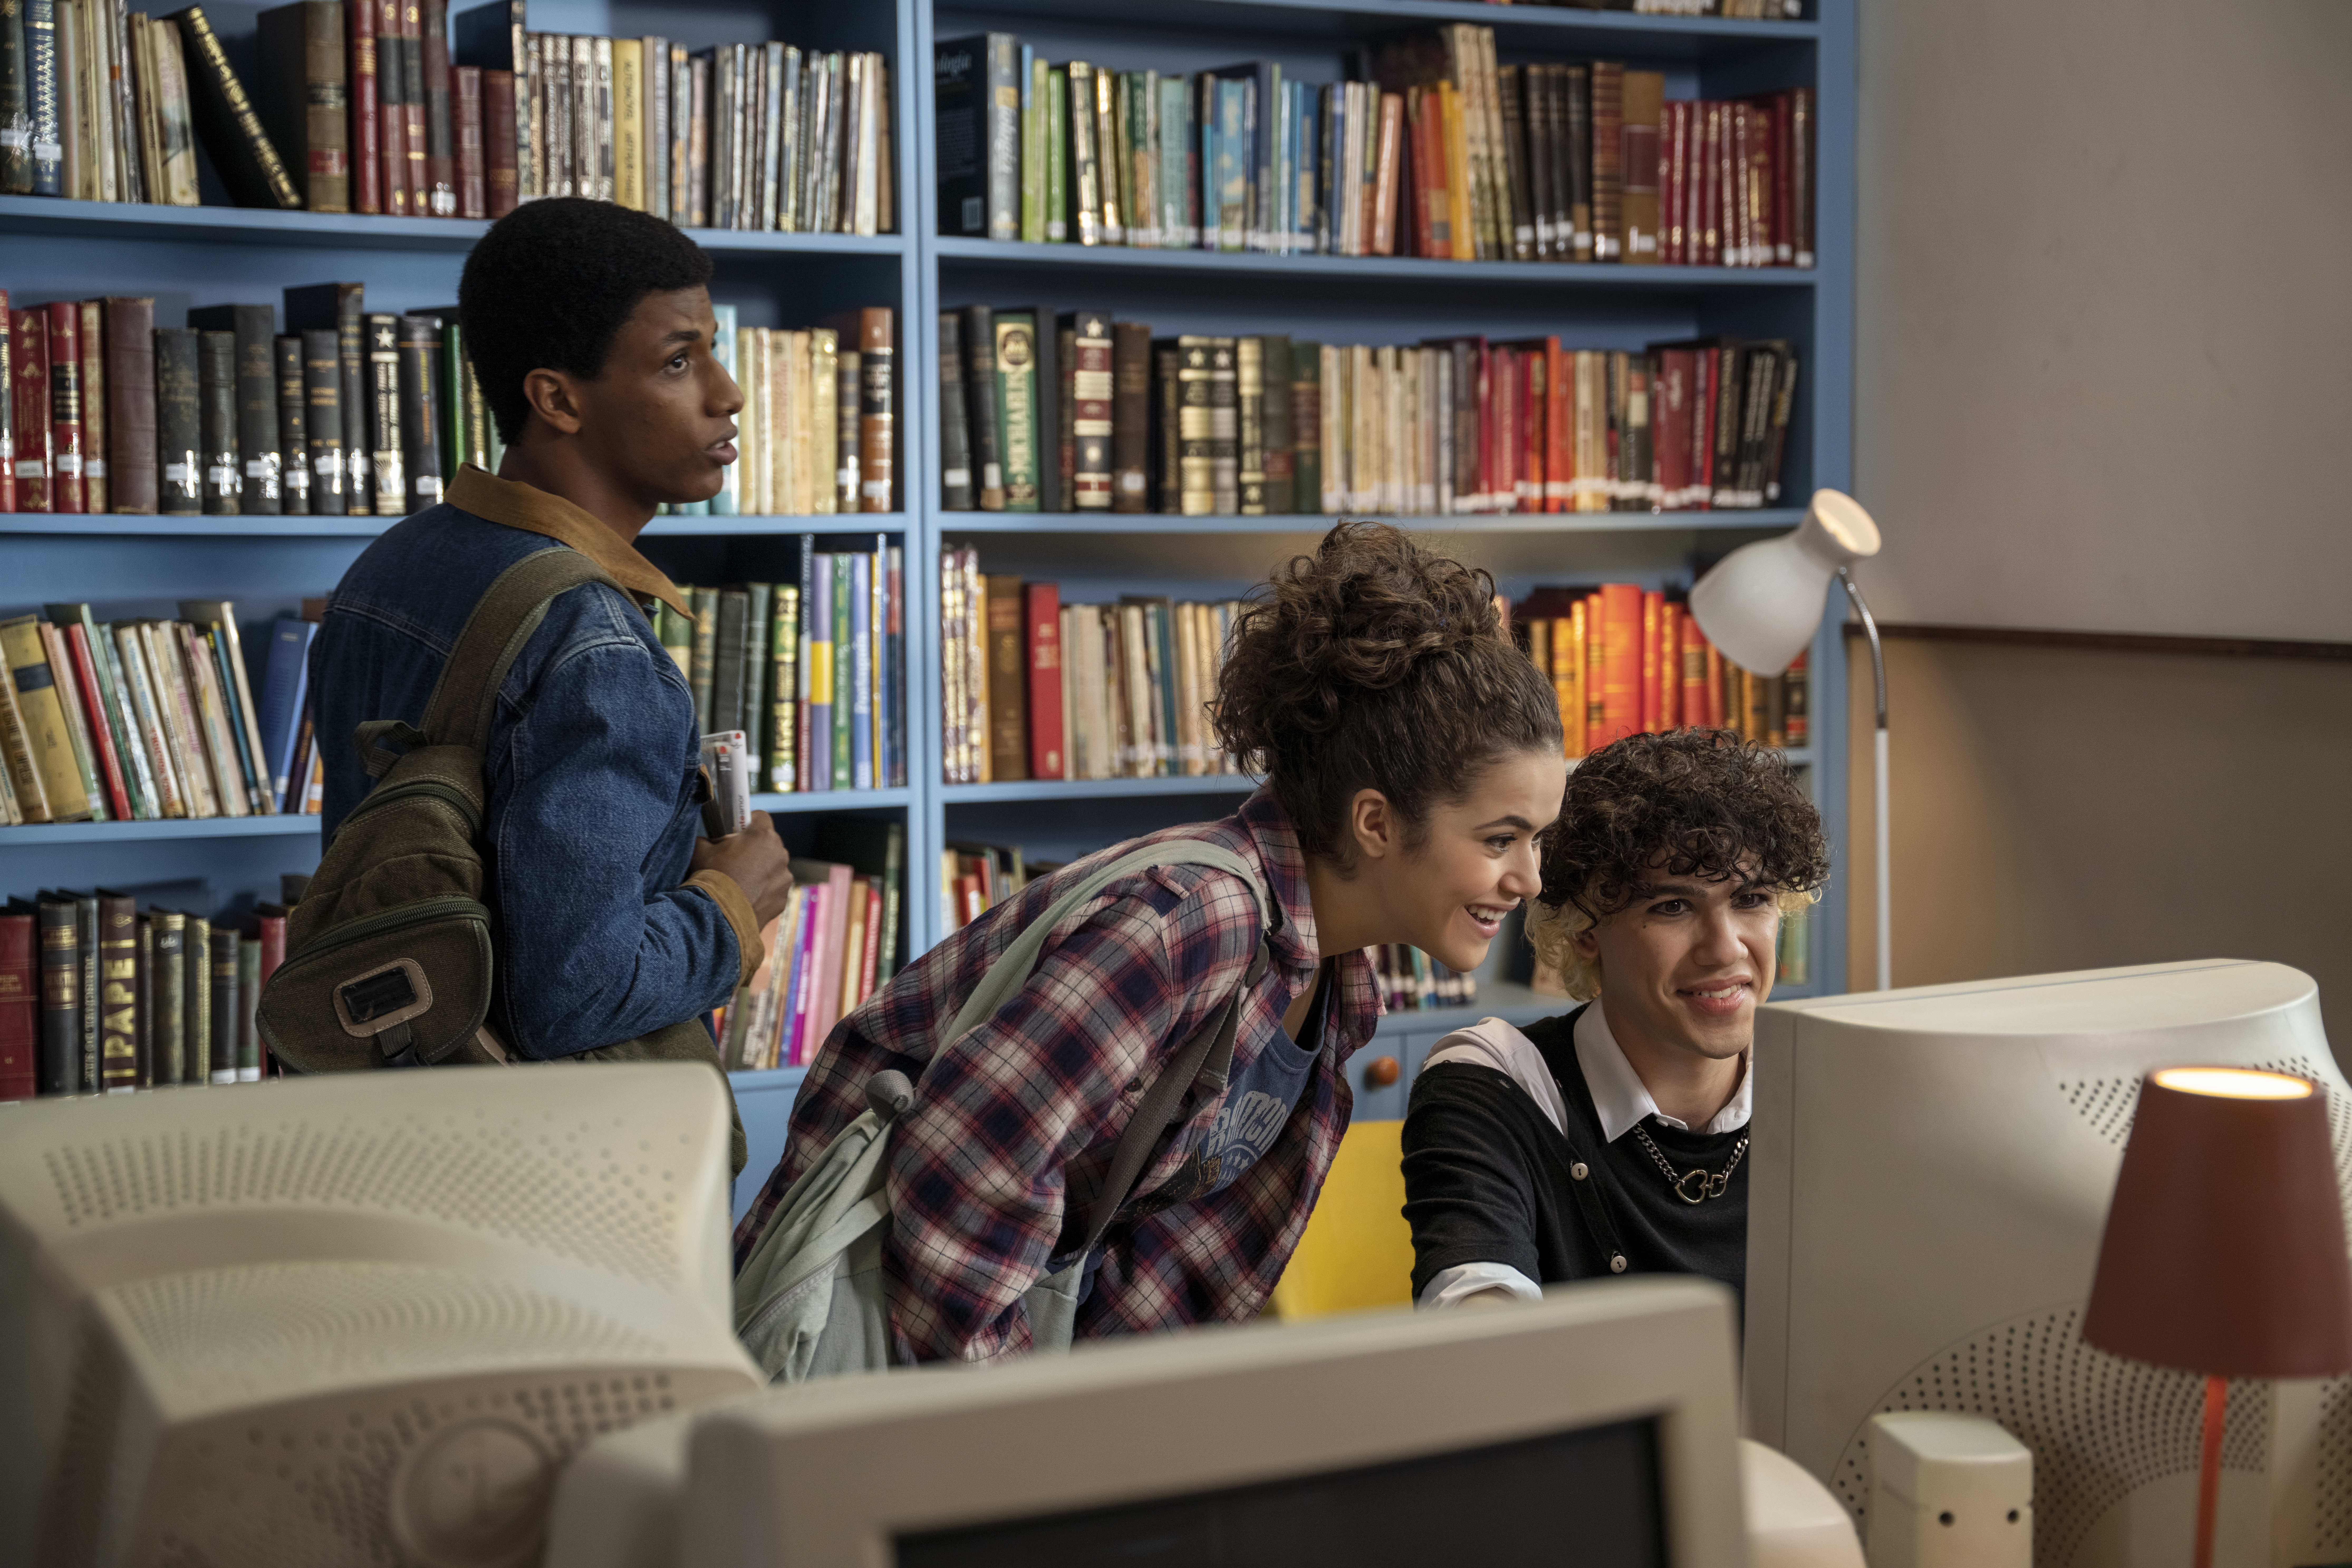 Três jovens em uma biblioteca olhando para a tela de um computador branco